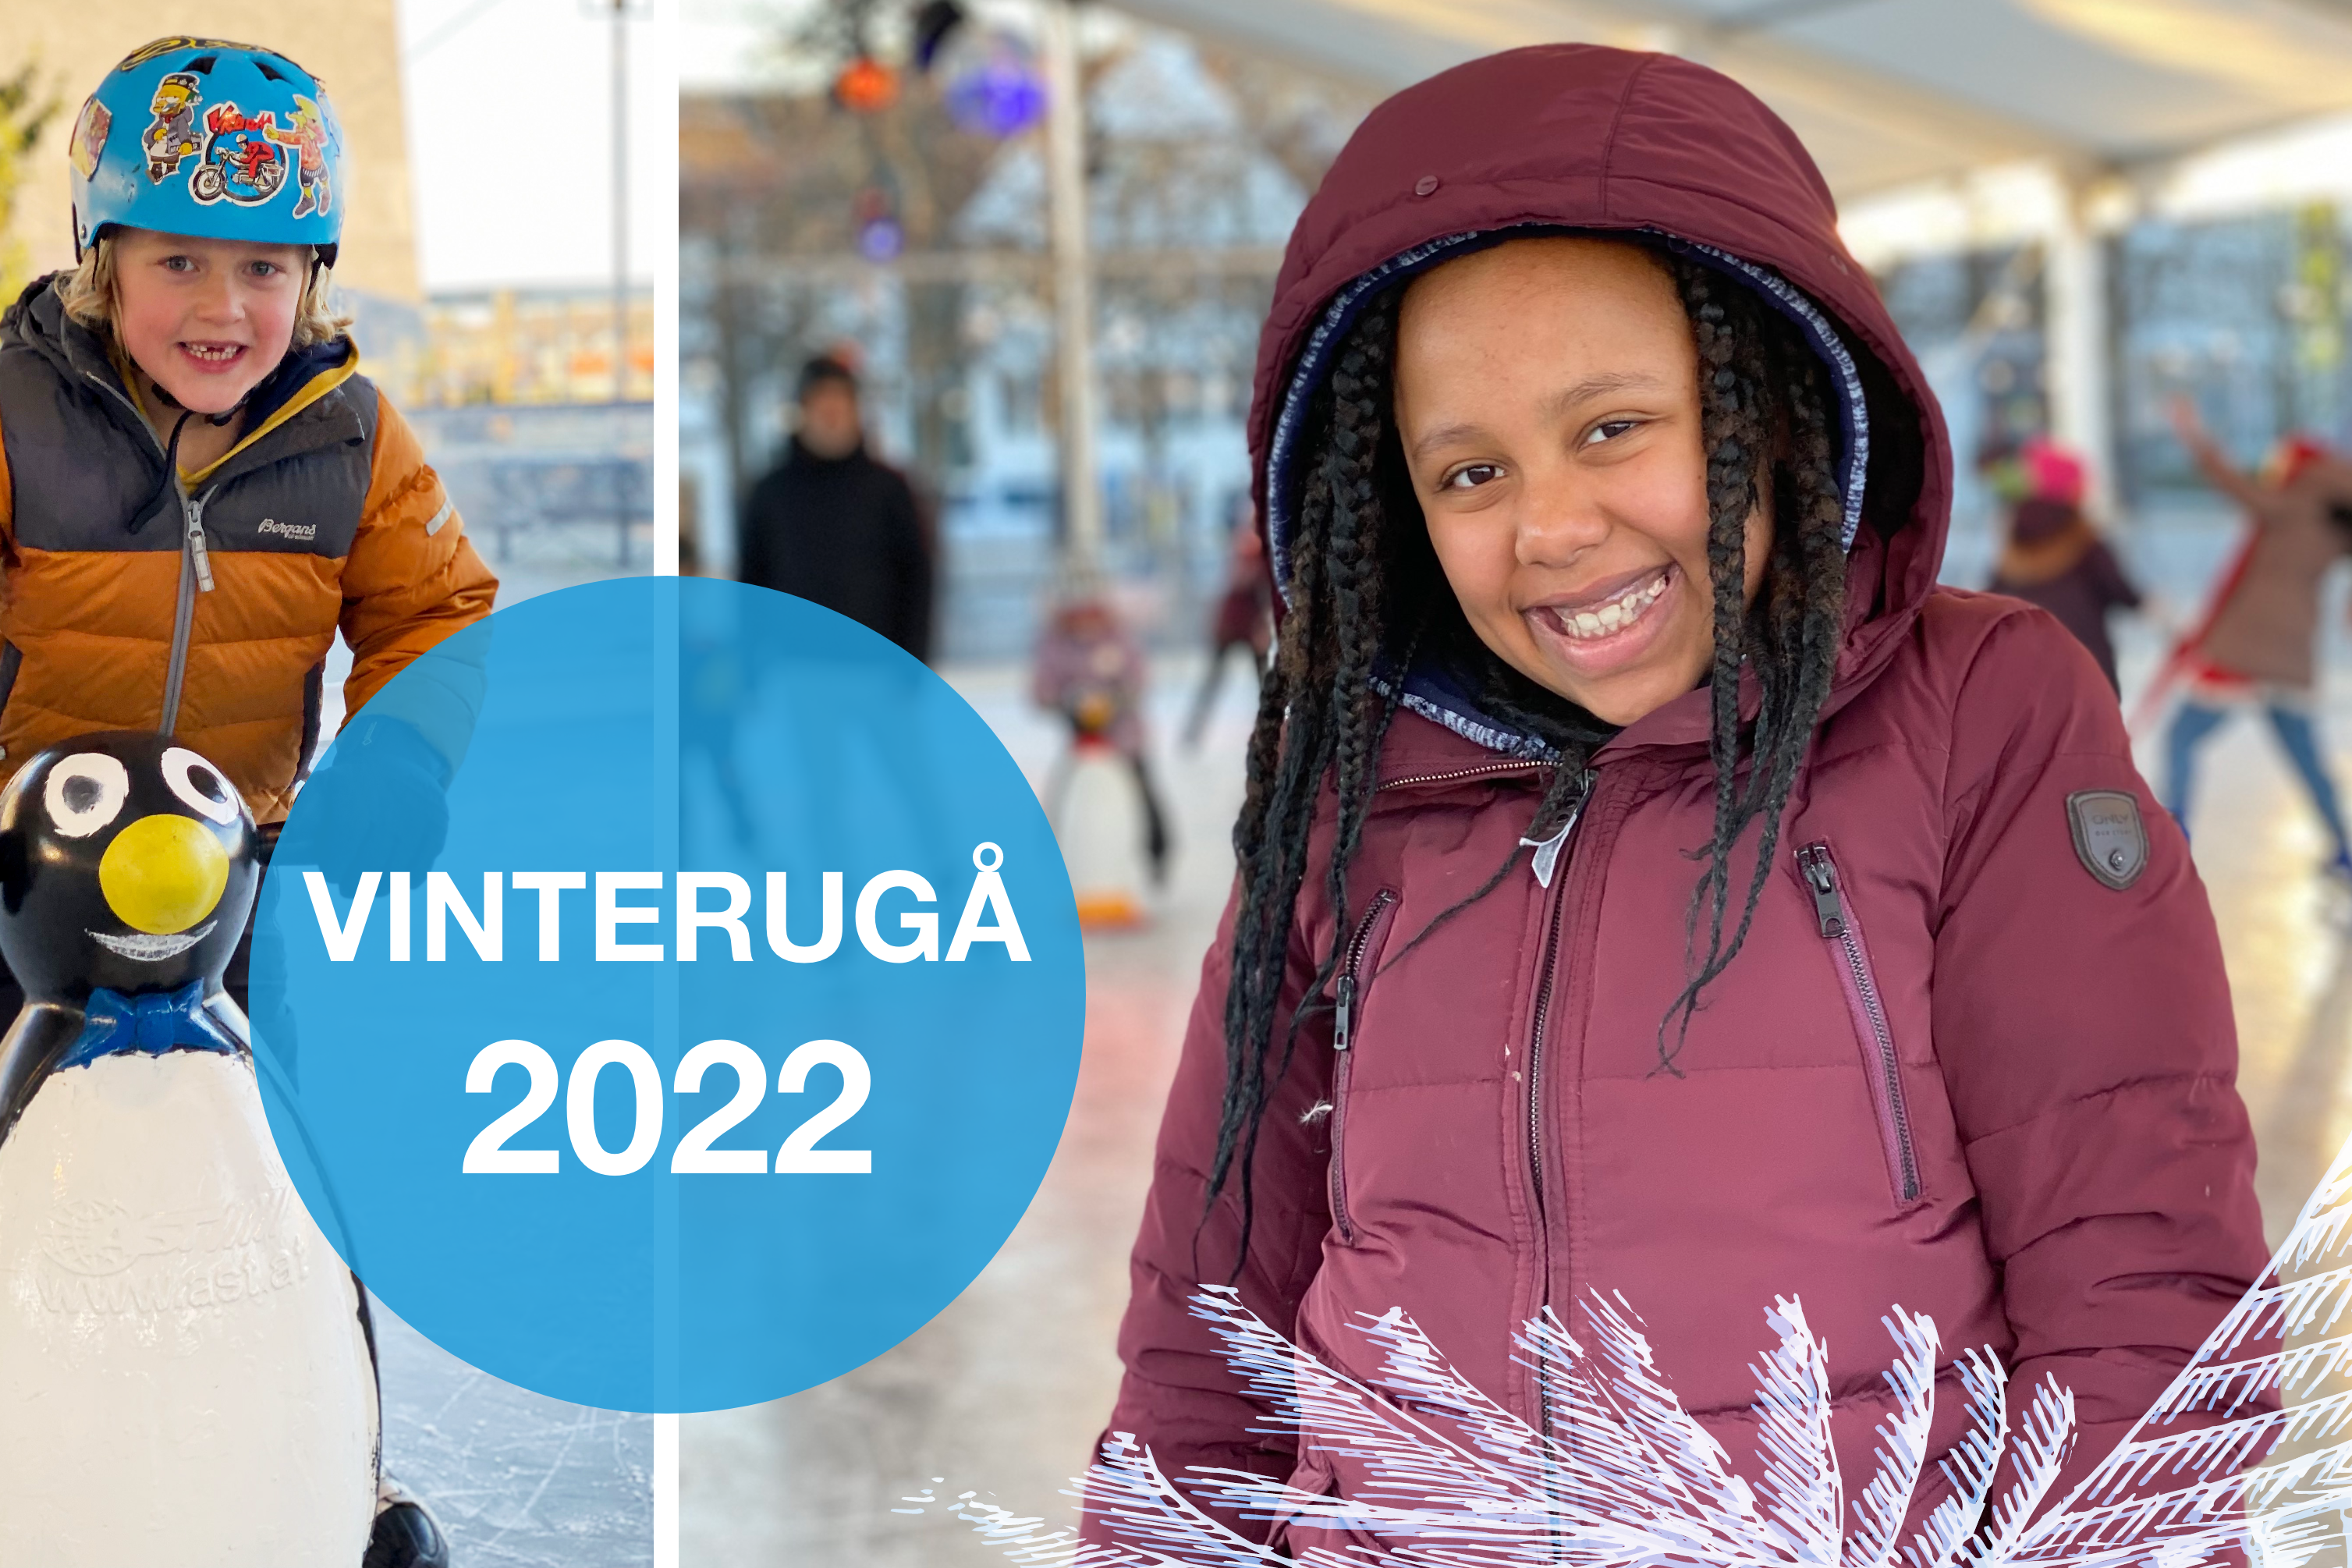 Vinterugå 2022 Randaberg hundre år